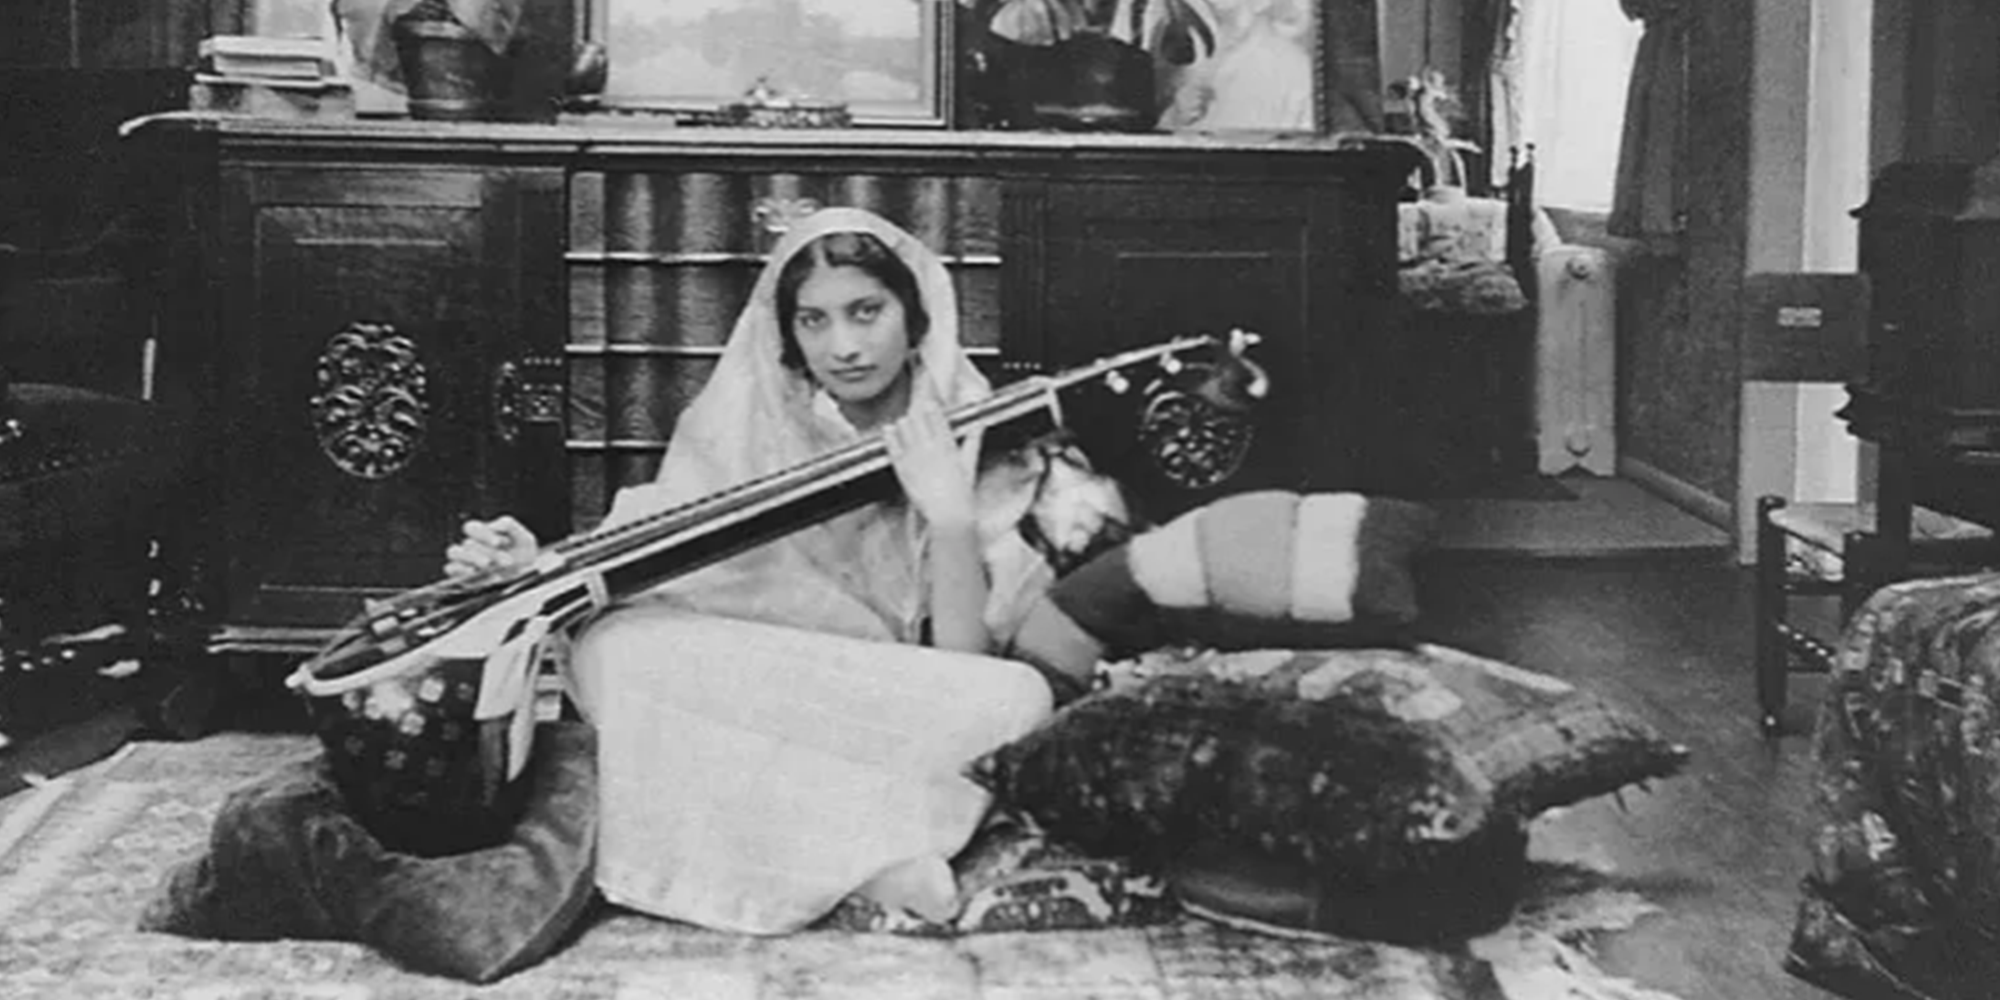 Noor Inayat Khan: a princesa indiana e espiã britânica que se tornou uma heroína de guerra